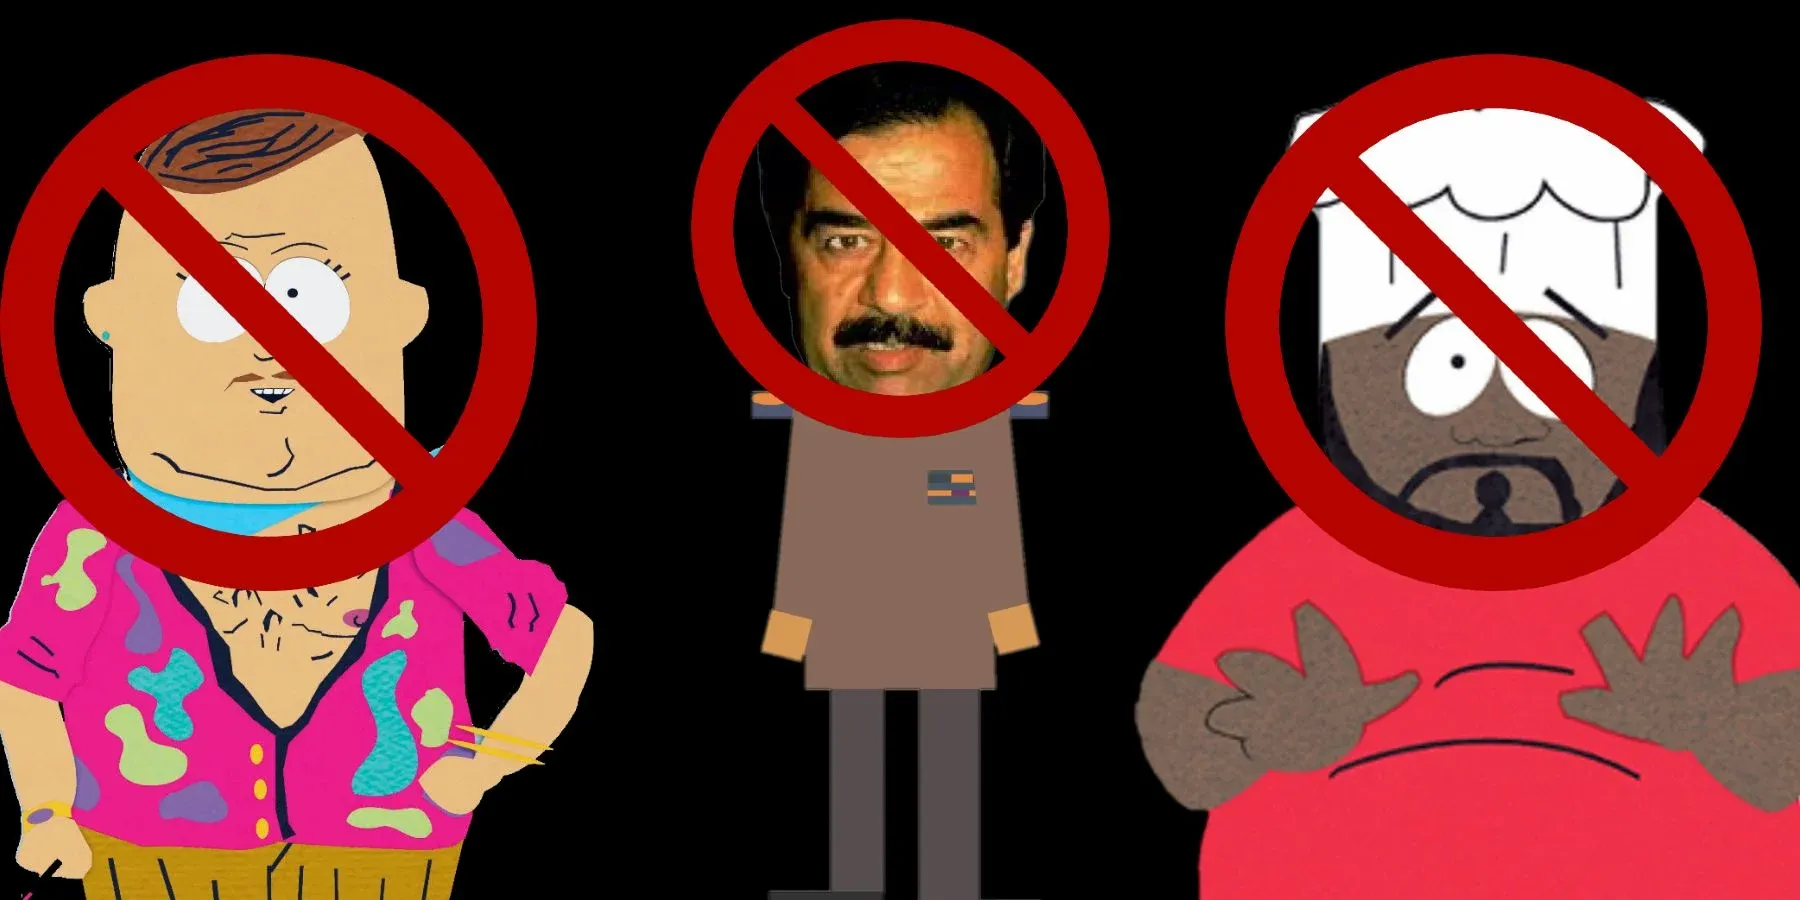 Οι 14 καλύτεροι χαρακτήρες του South Park που αποσύρθηκαν ή αποσύρθηκαν από την παράσταση